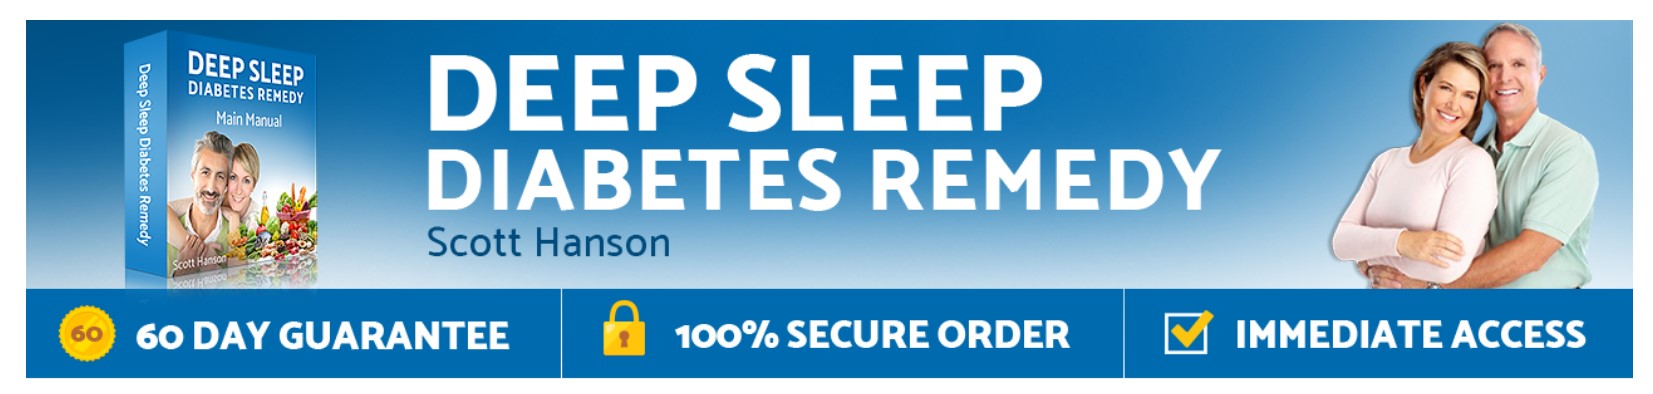 deep sleep diabetes guarantee